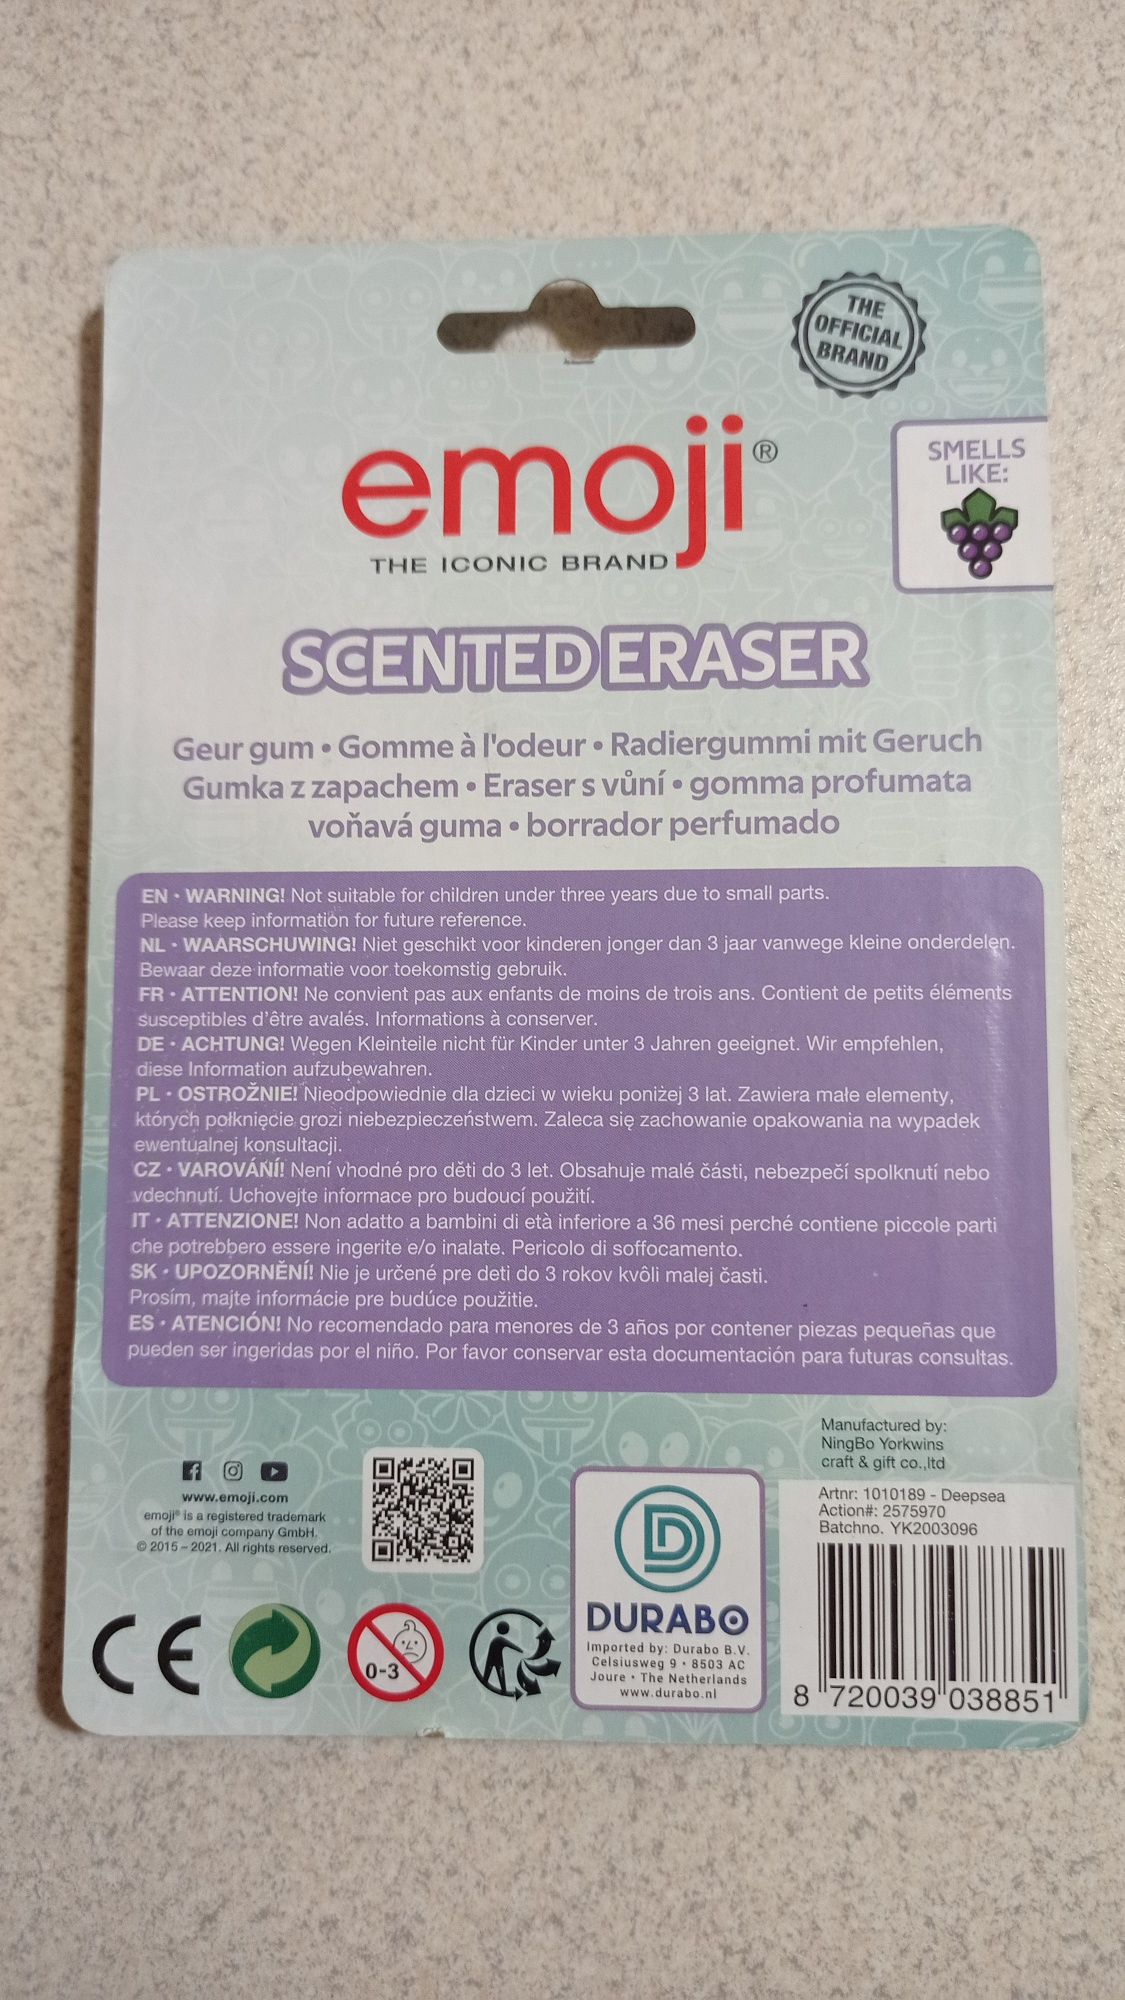 Nowe w opakowaniu GUMKI zapachowe Emoji + GRATIS notesik rękodzieło